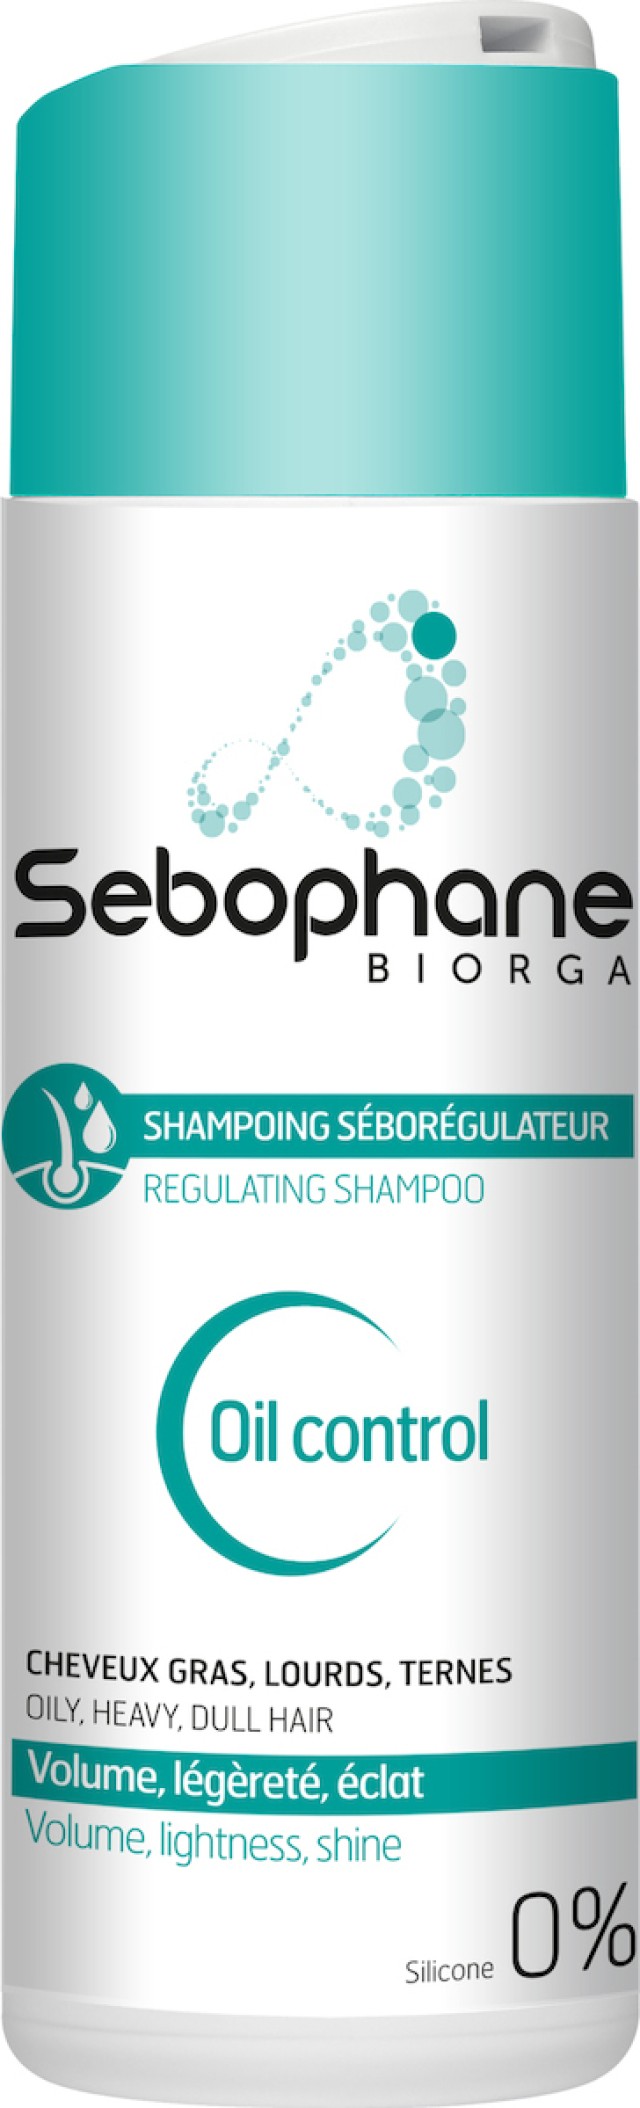 Biorga Sebophane Oil Control Shampoo Σαμπουάν για Ρύθμιση της Λιπαρότητας 200ml